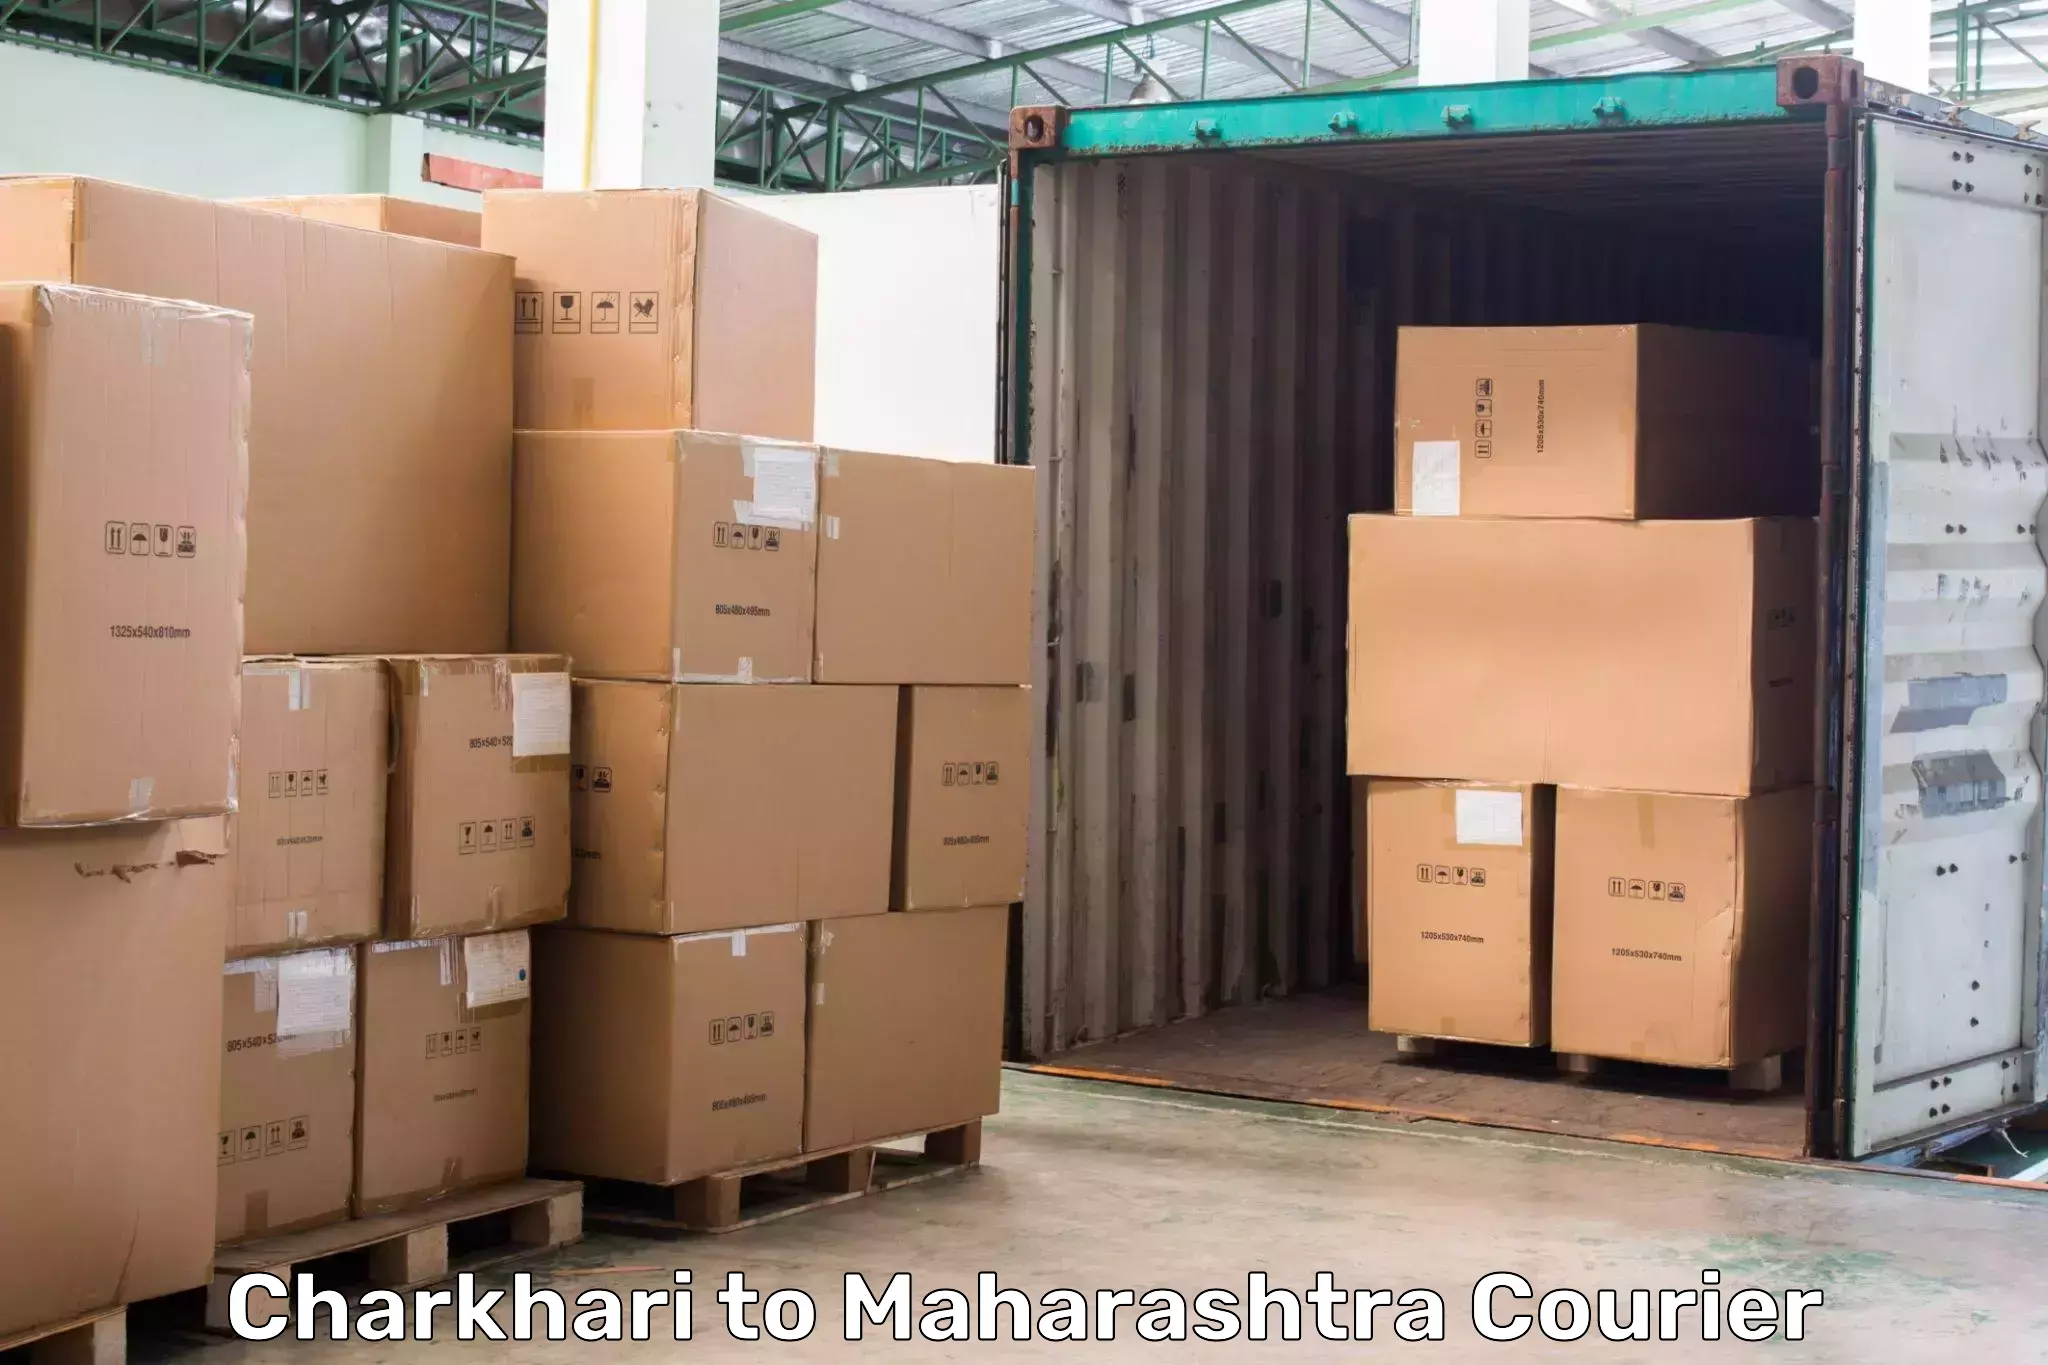 Advanced shipping technology Charkhari to Maharashtra